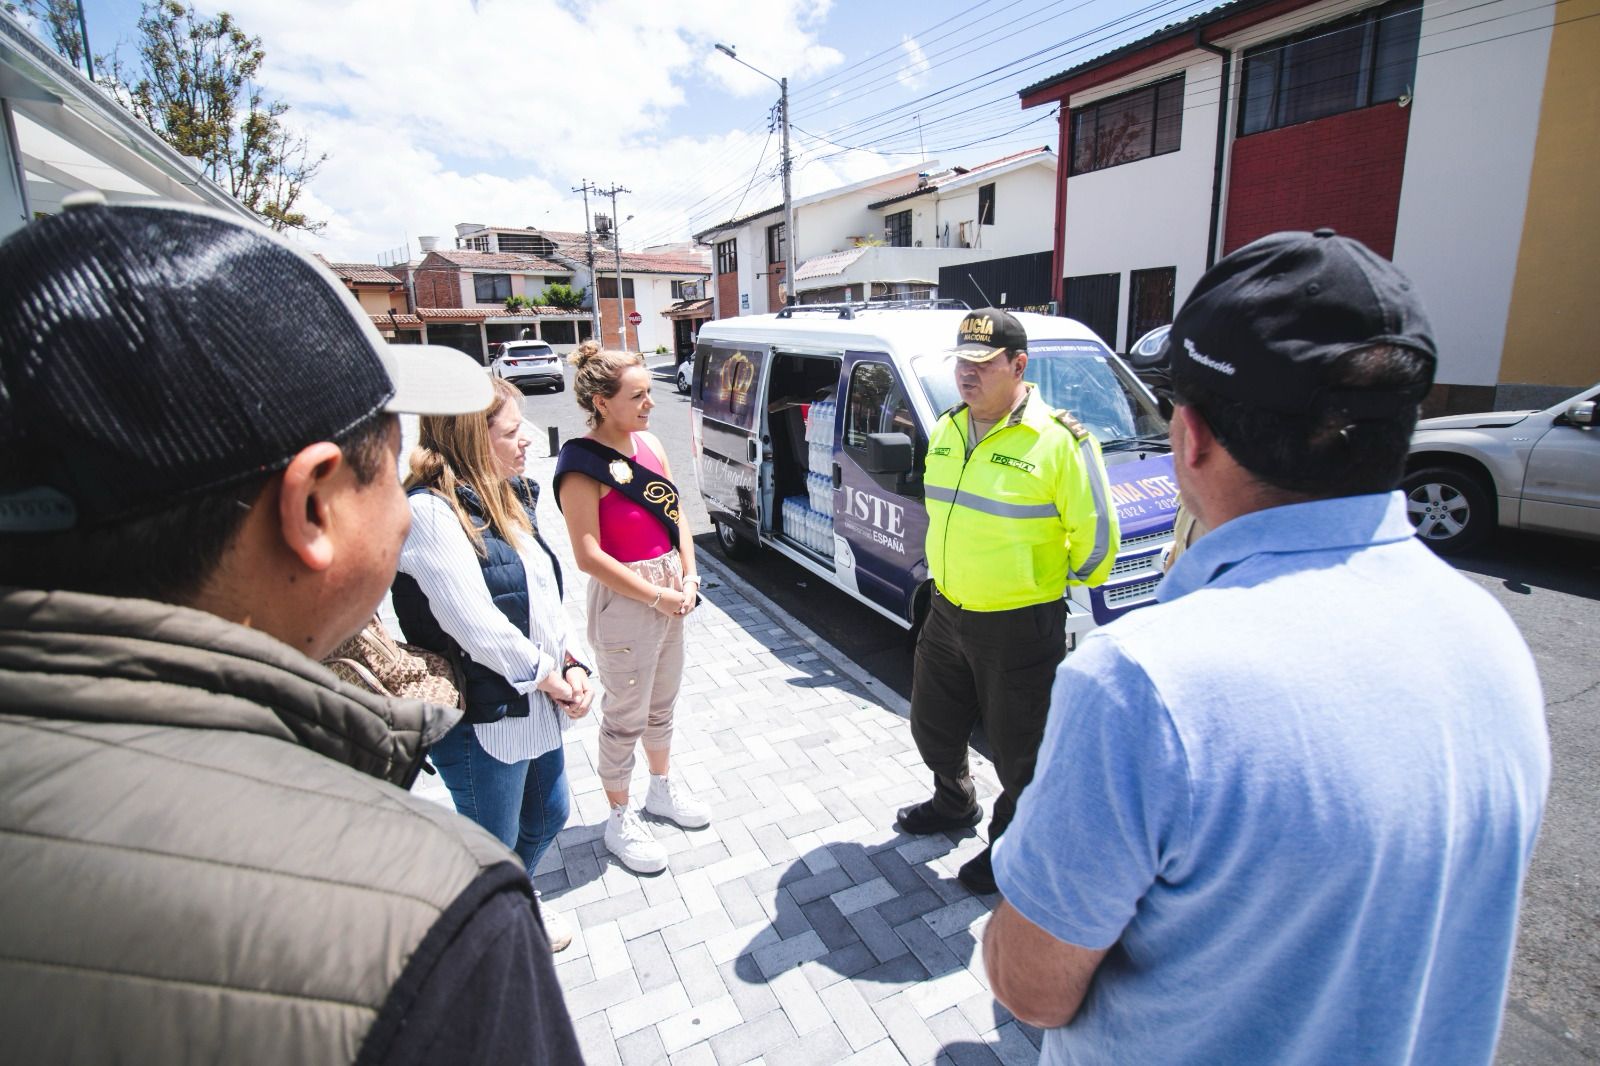 María Ángeles Pacheco, reina del ISTE, en la entrega de refrigerios y aguas a los policías y militares que resguardan a Ambato.